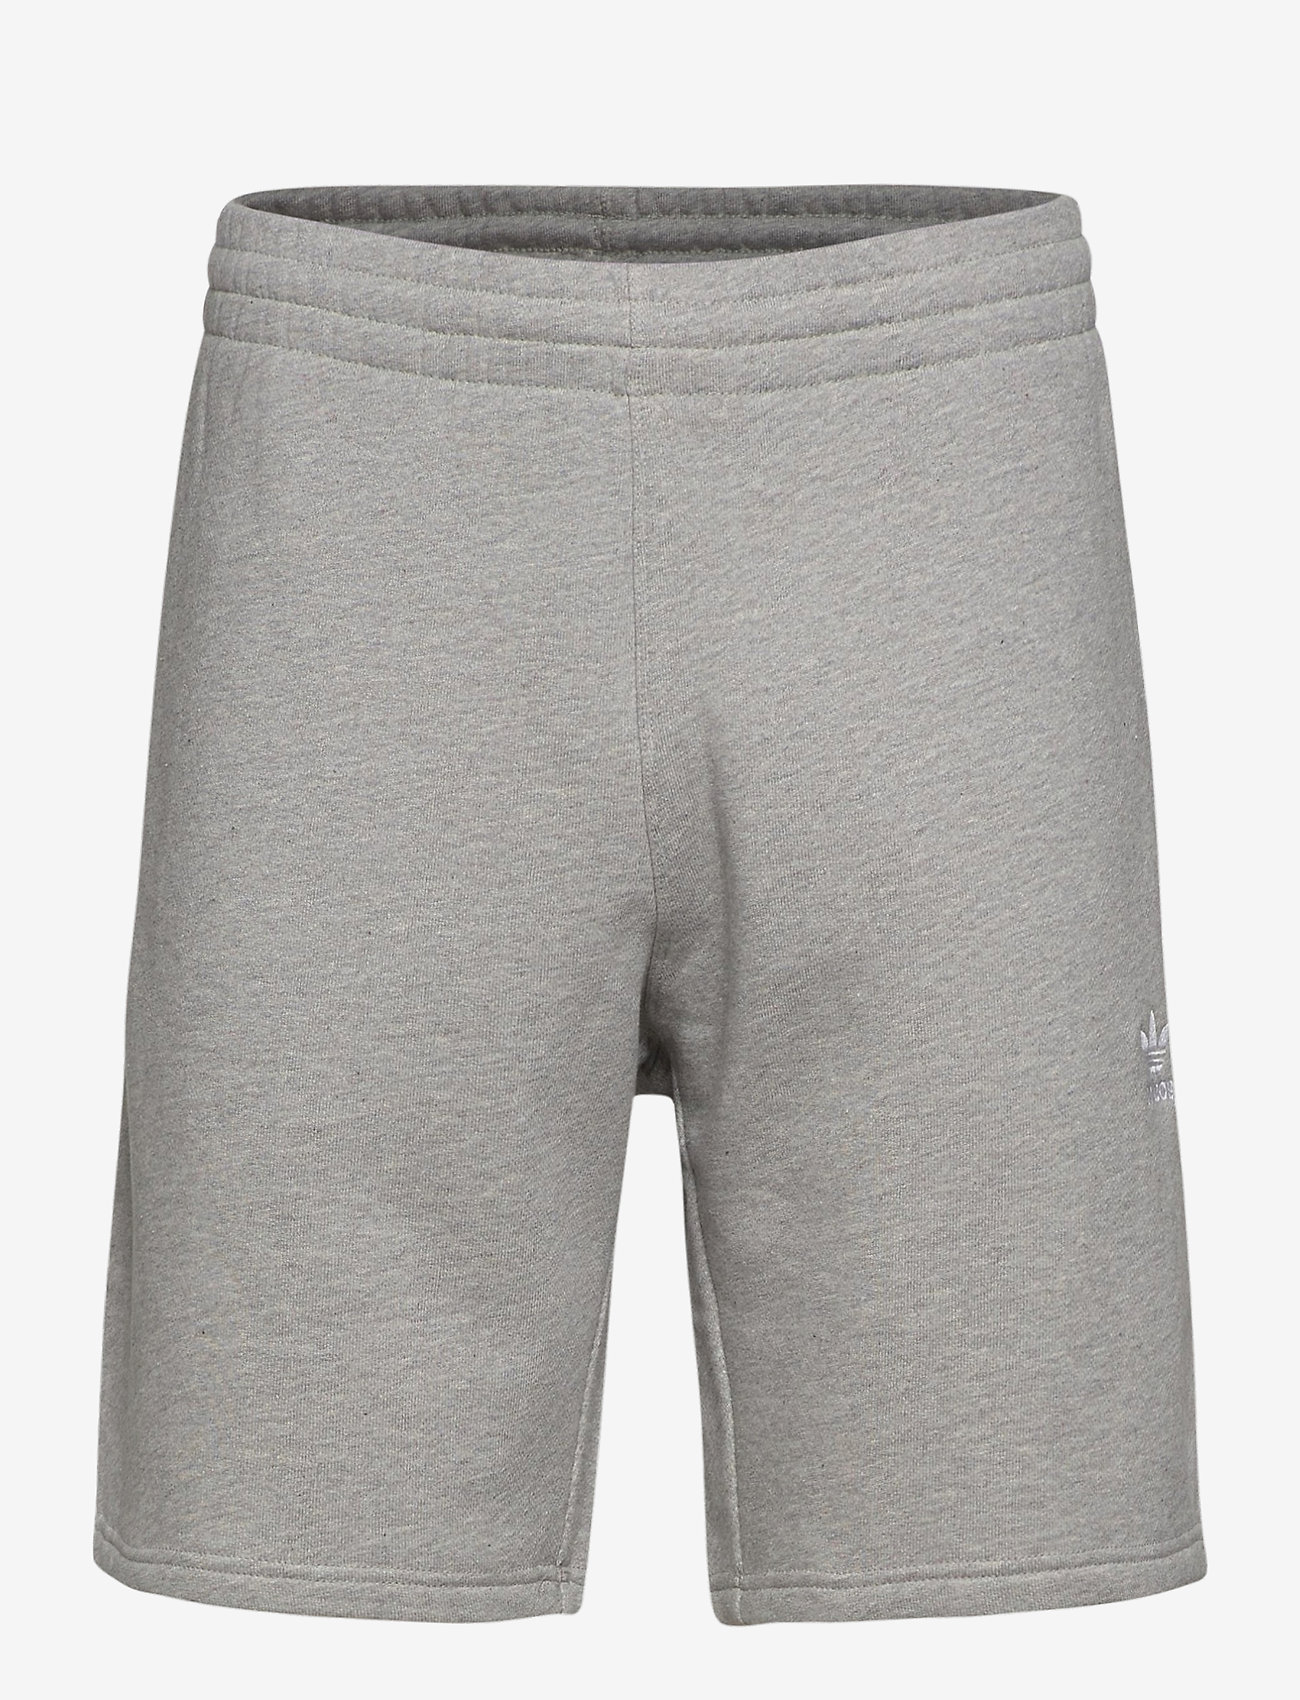 adidas Originals Trefoil Essentials Shorts - Shorts | Boozt.com